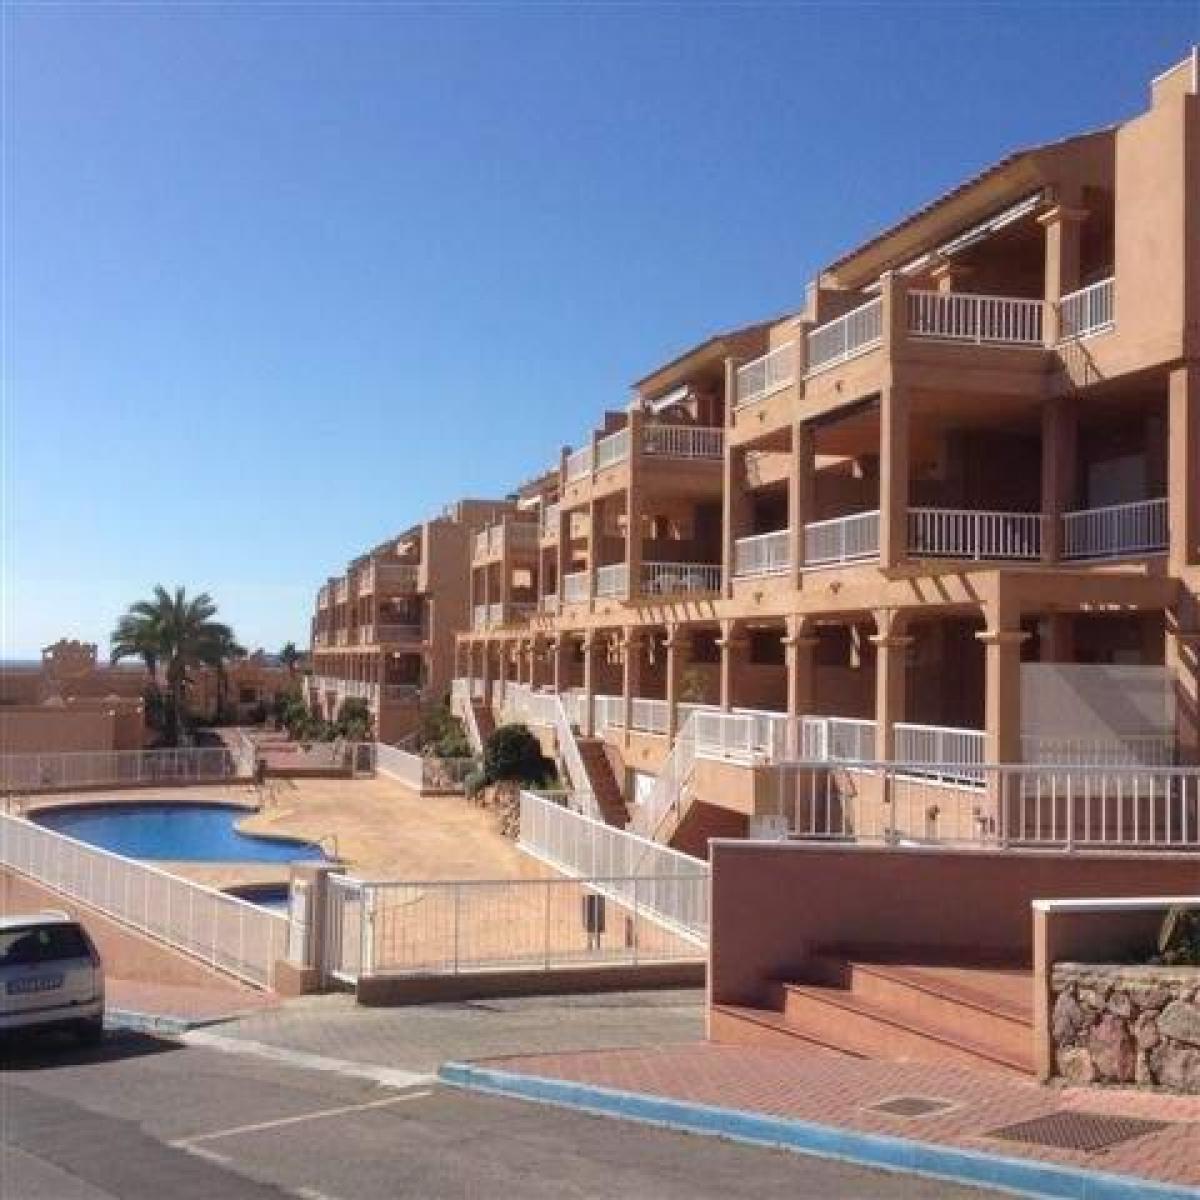 Picture of Apartment For Sale in Mojacar, Almeria, Spain